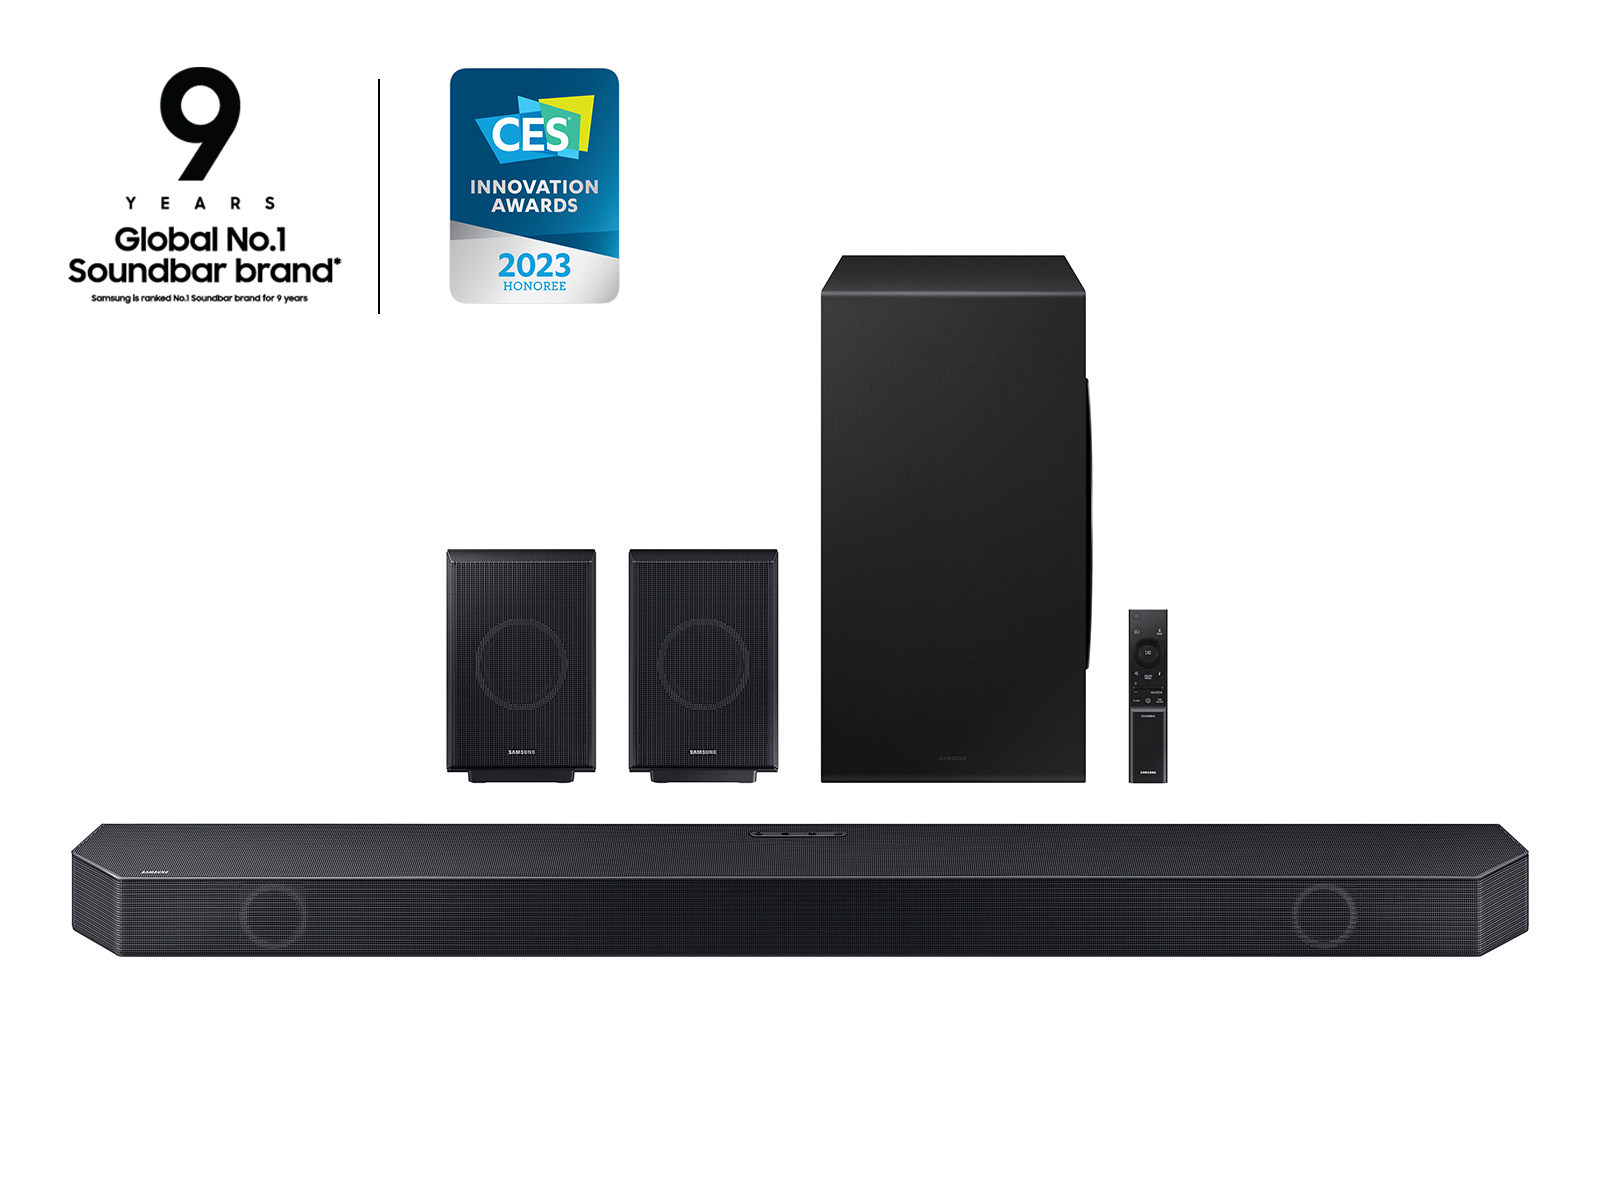 Best Samsung TV 2023: Crystal UHD vs QLED vs Neo QLED & More - Tech Advisor